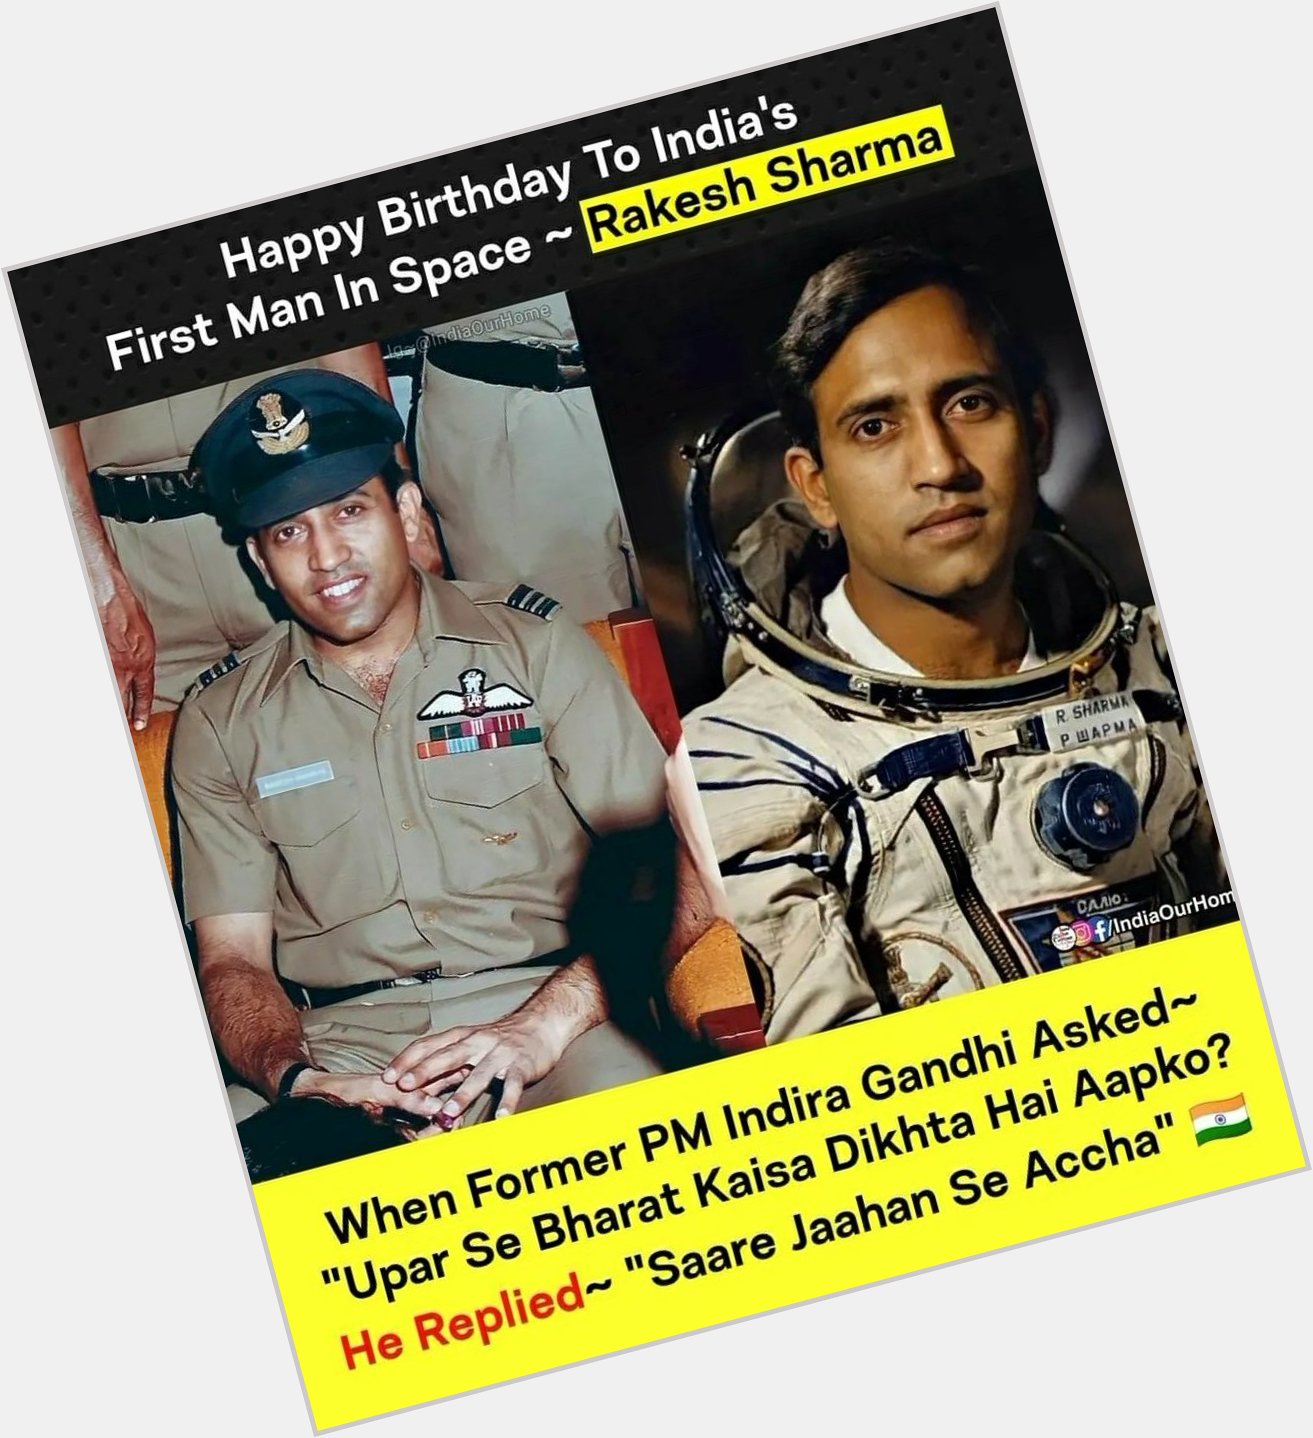 # Happy birthday to 1st man in space .( Rakesh sharma )
# saare jaahan se Accha, hindustan hamaraa .
# jai hind 